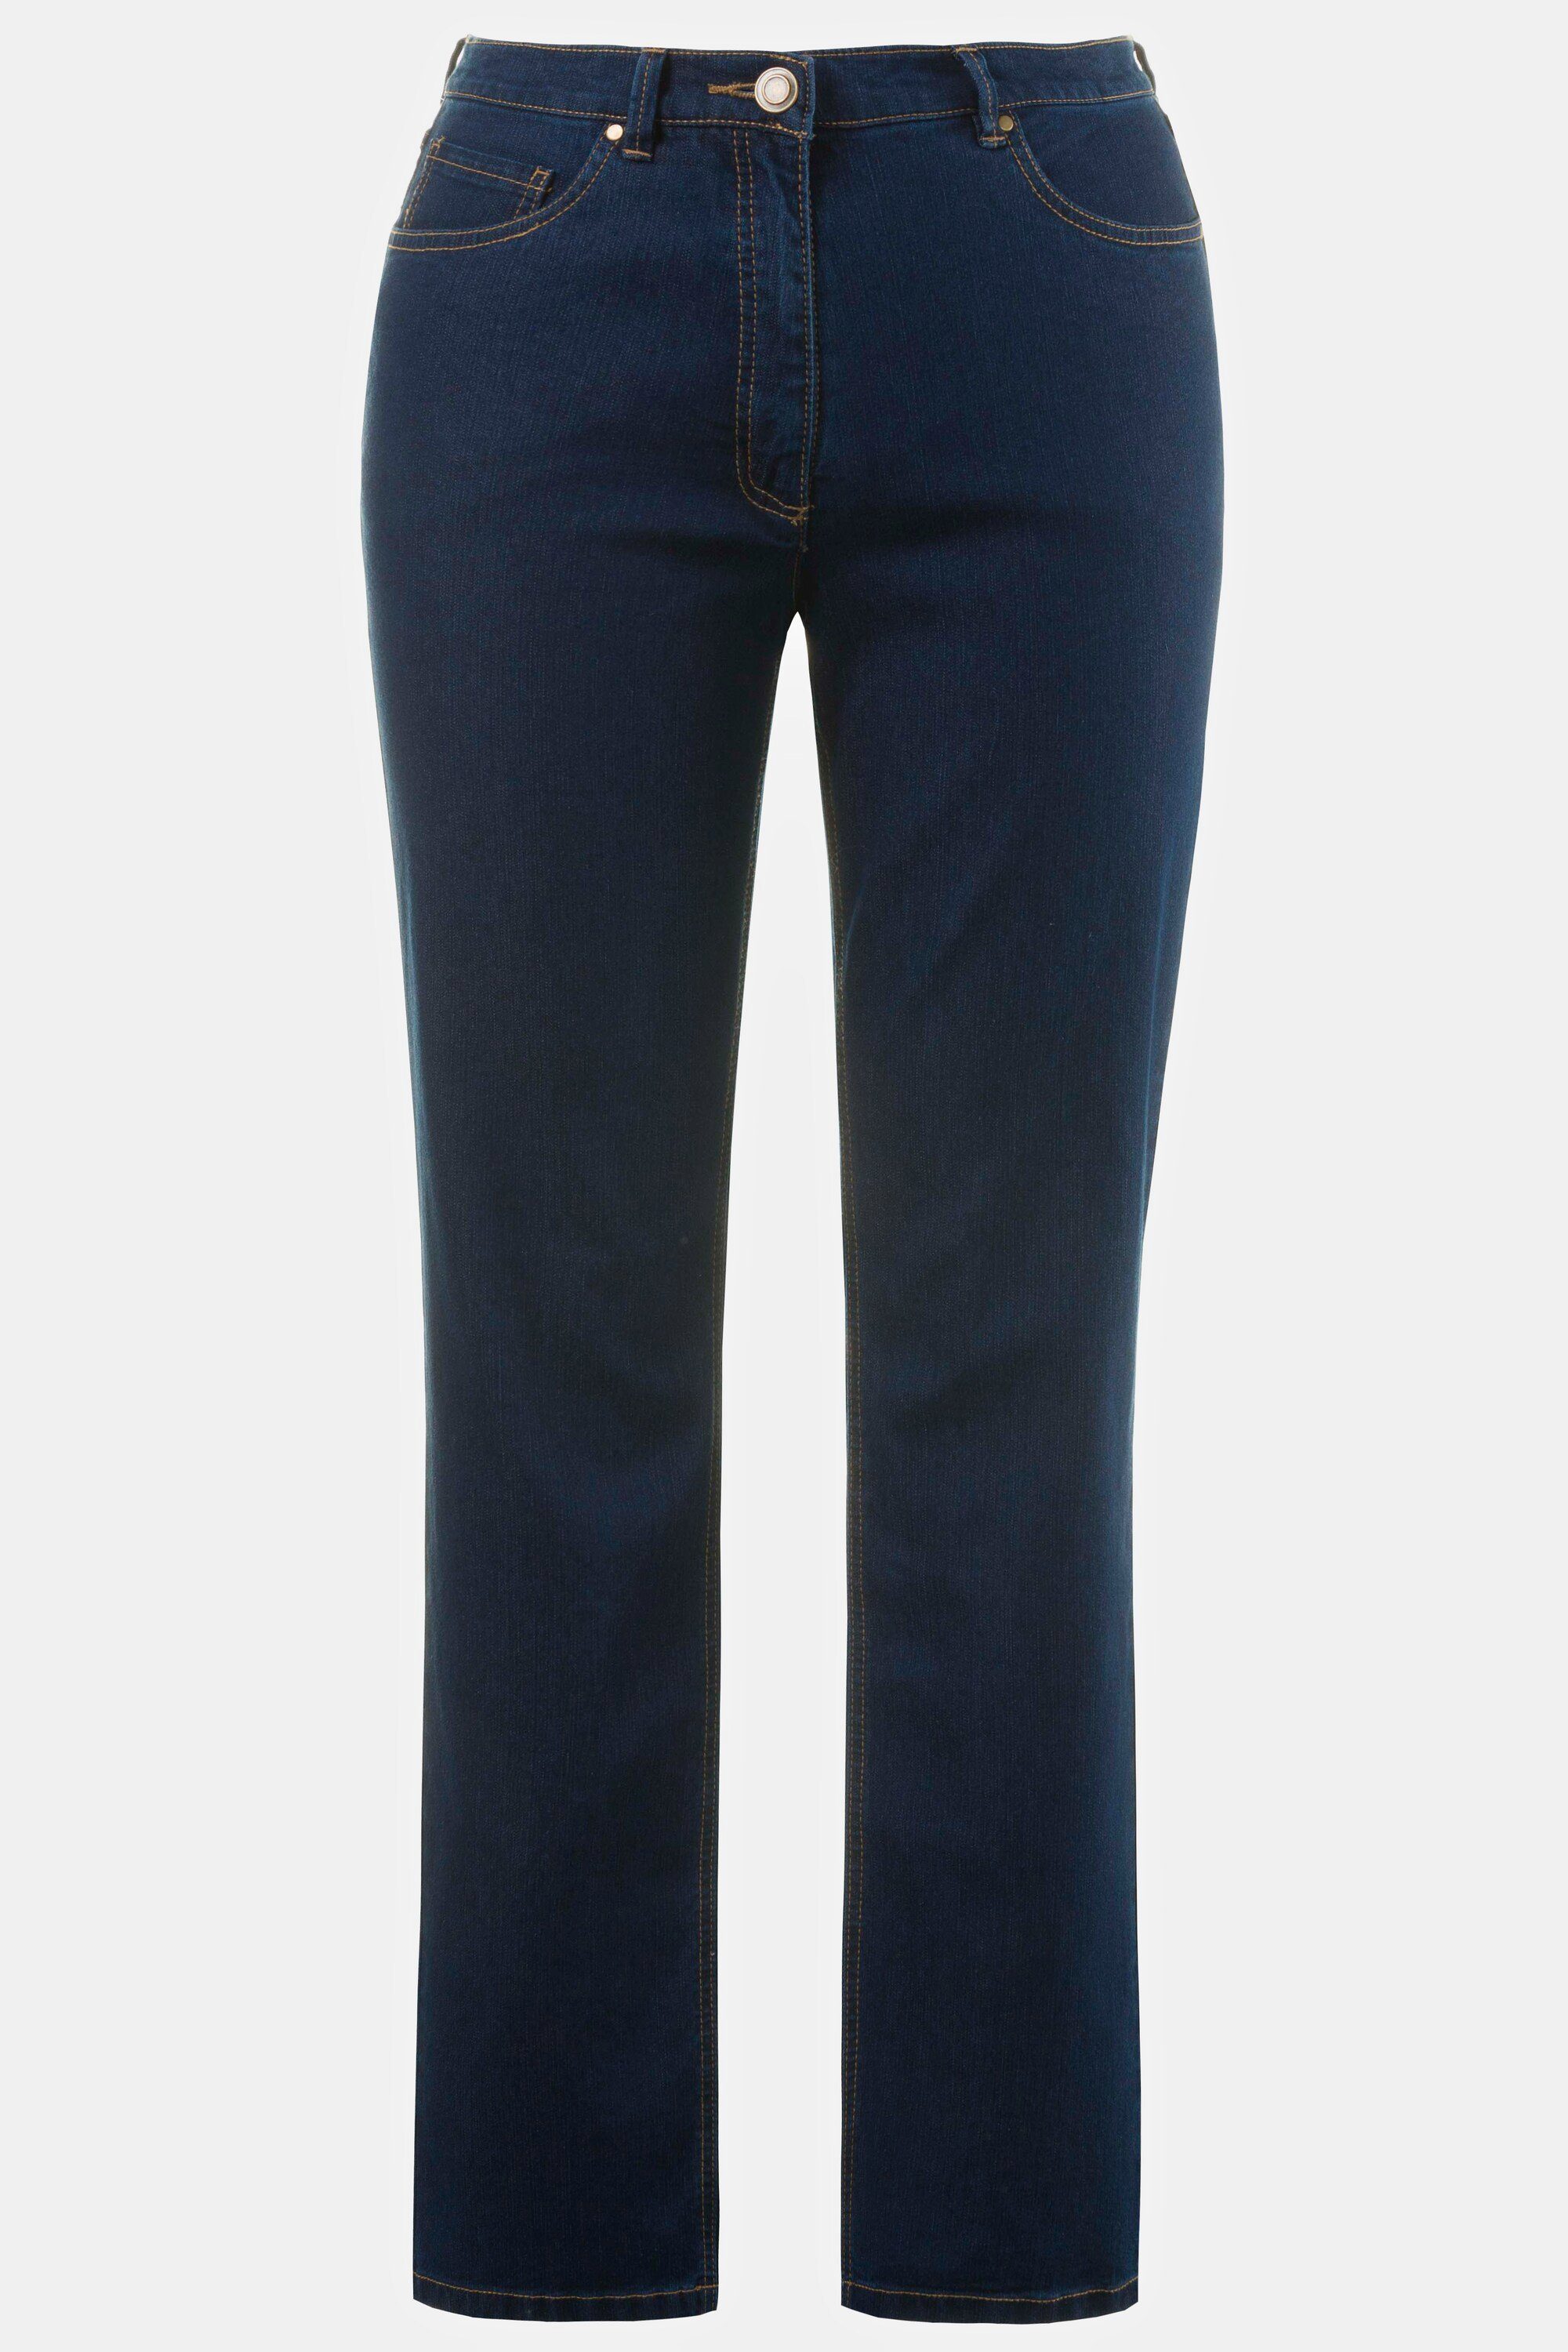 gerades Funktionshose 5-Pocket-Form Stretch Mandy Ulla blue denim Bein Popken Jeans